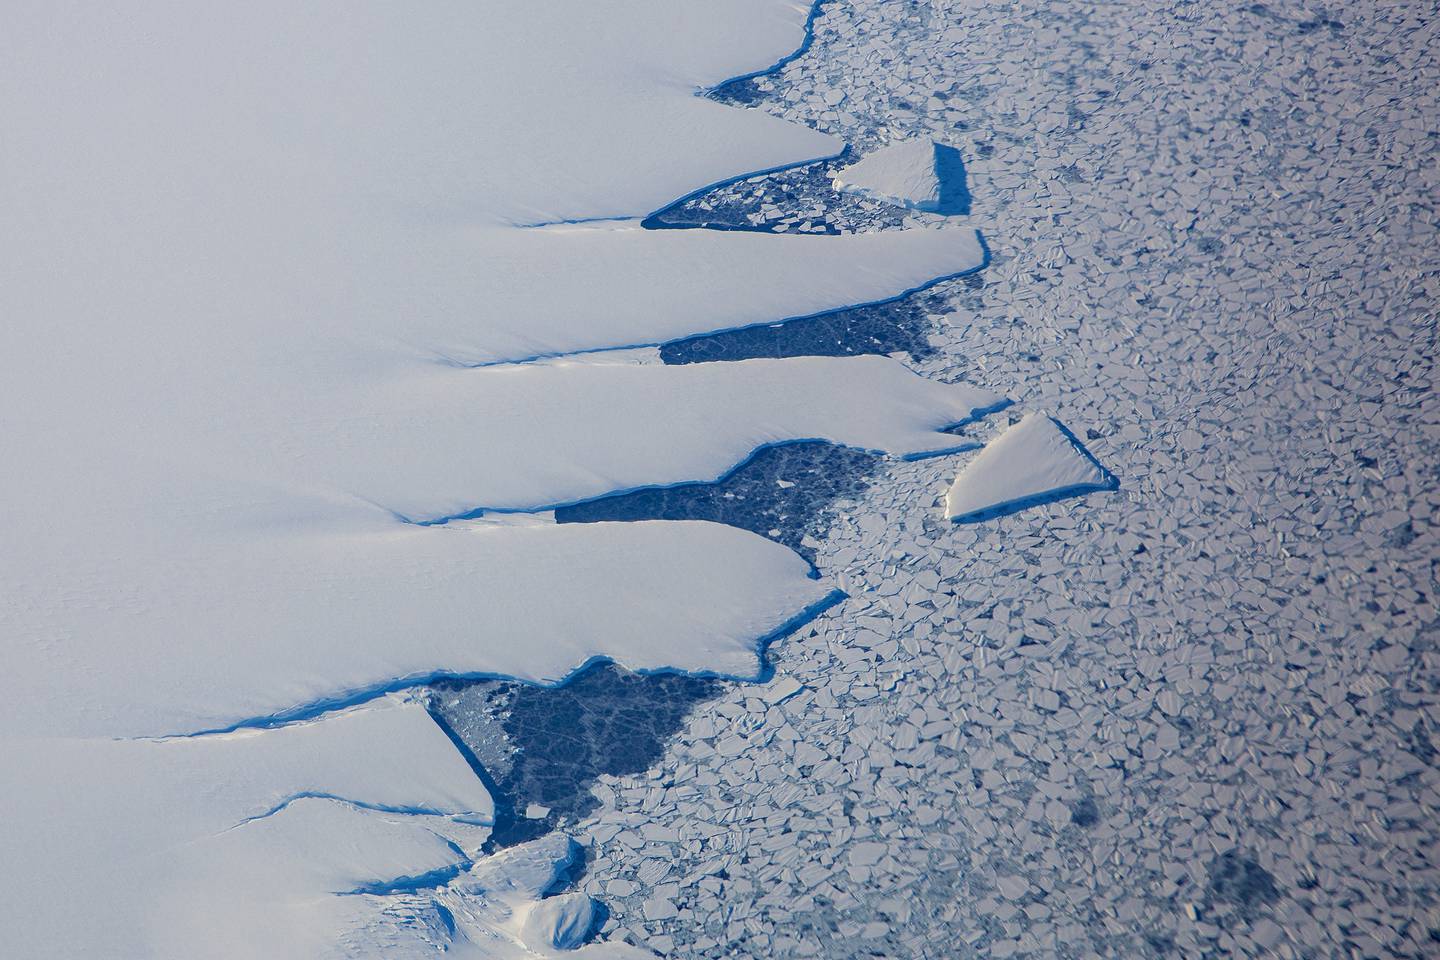 Iskanten som markerer starten på det enorme området som er dekket av is i Antarktis. På det tykkeste er isen over 2000 meter.